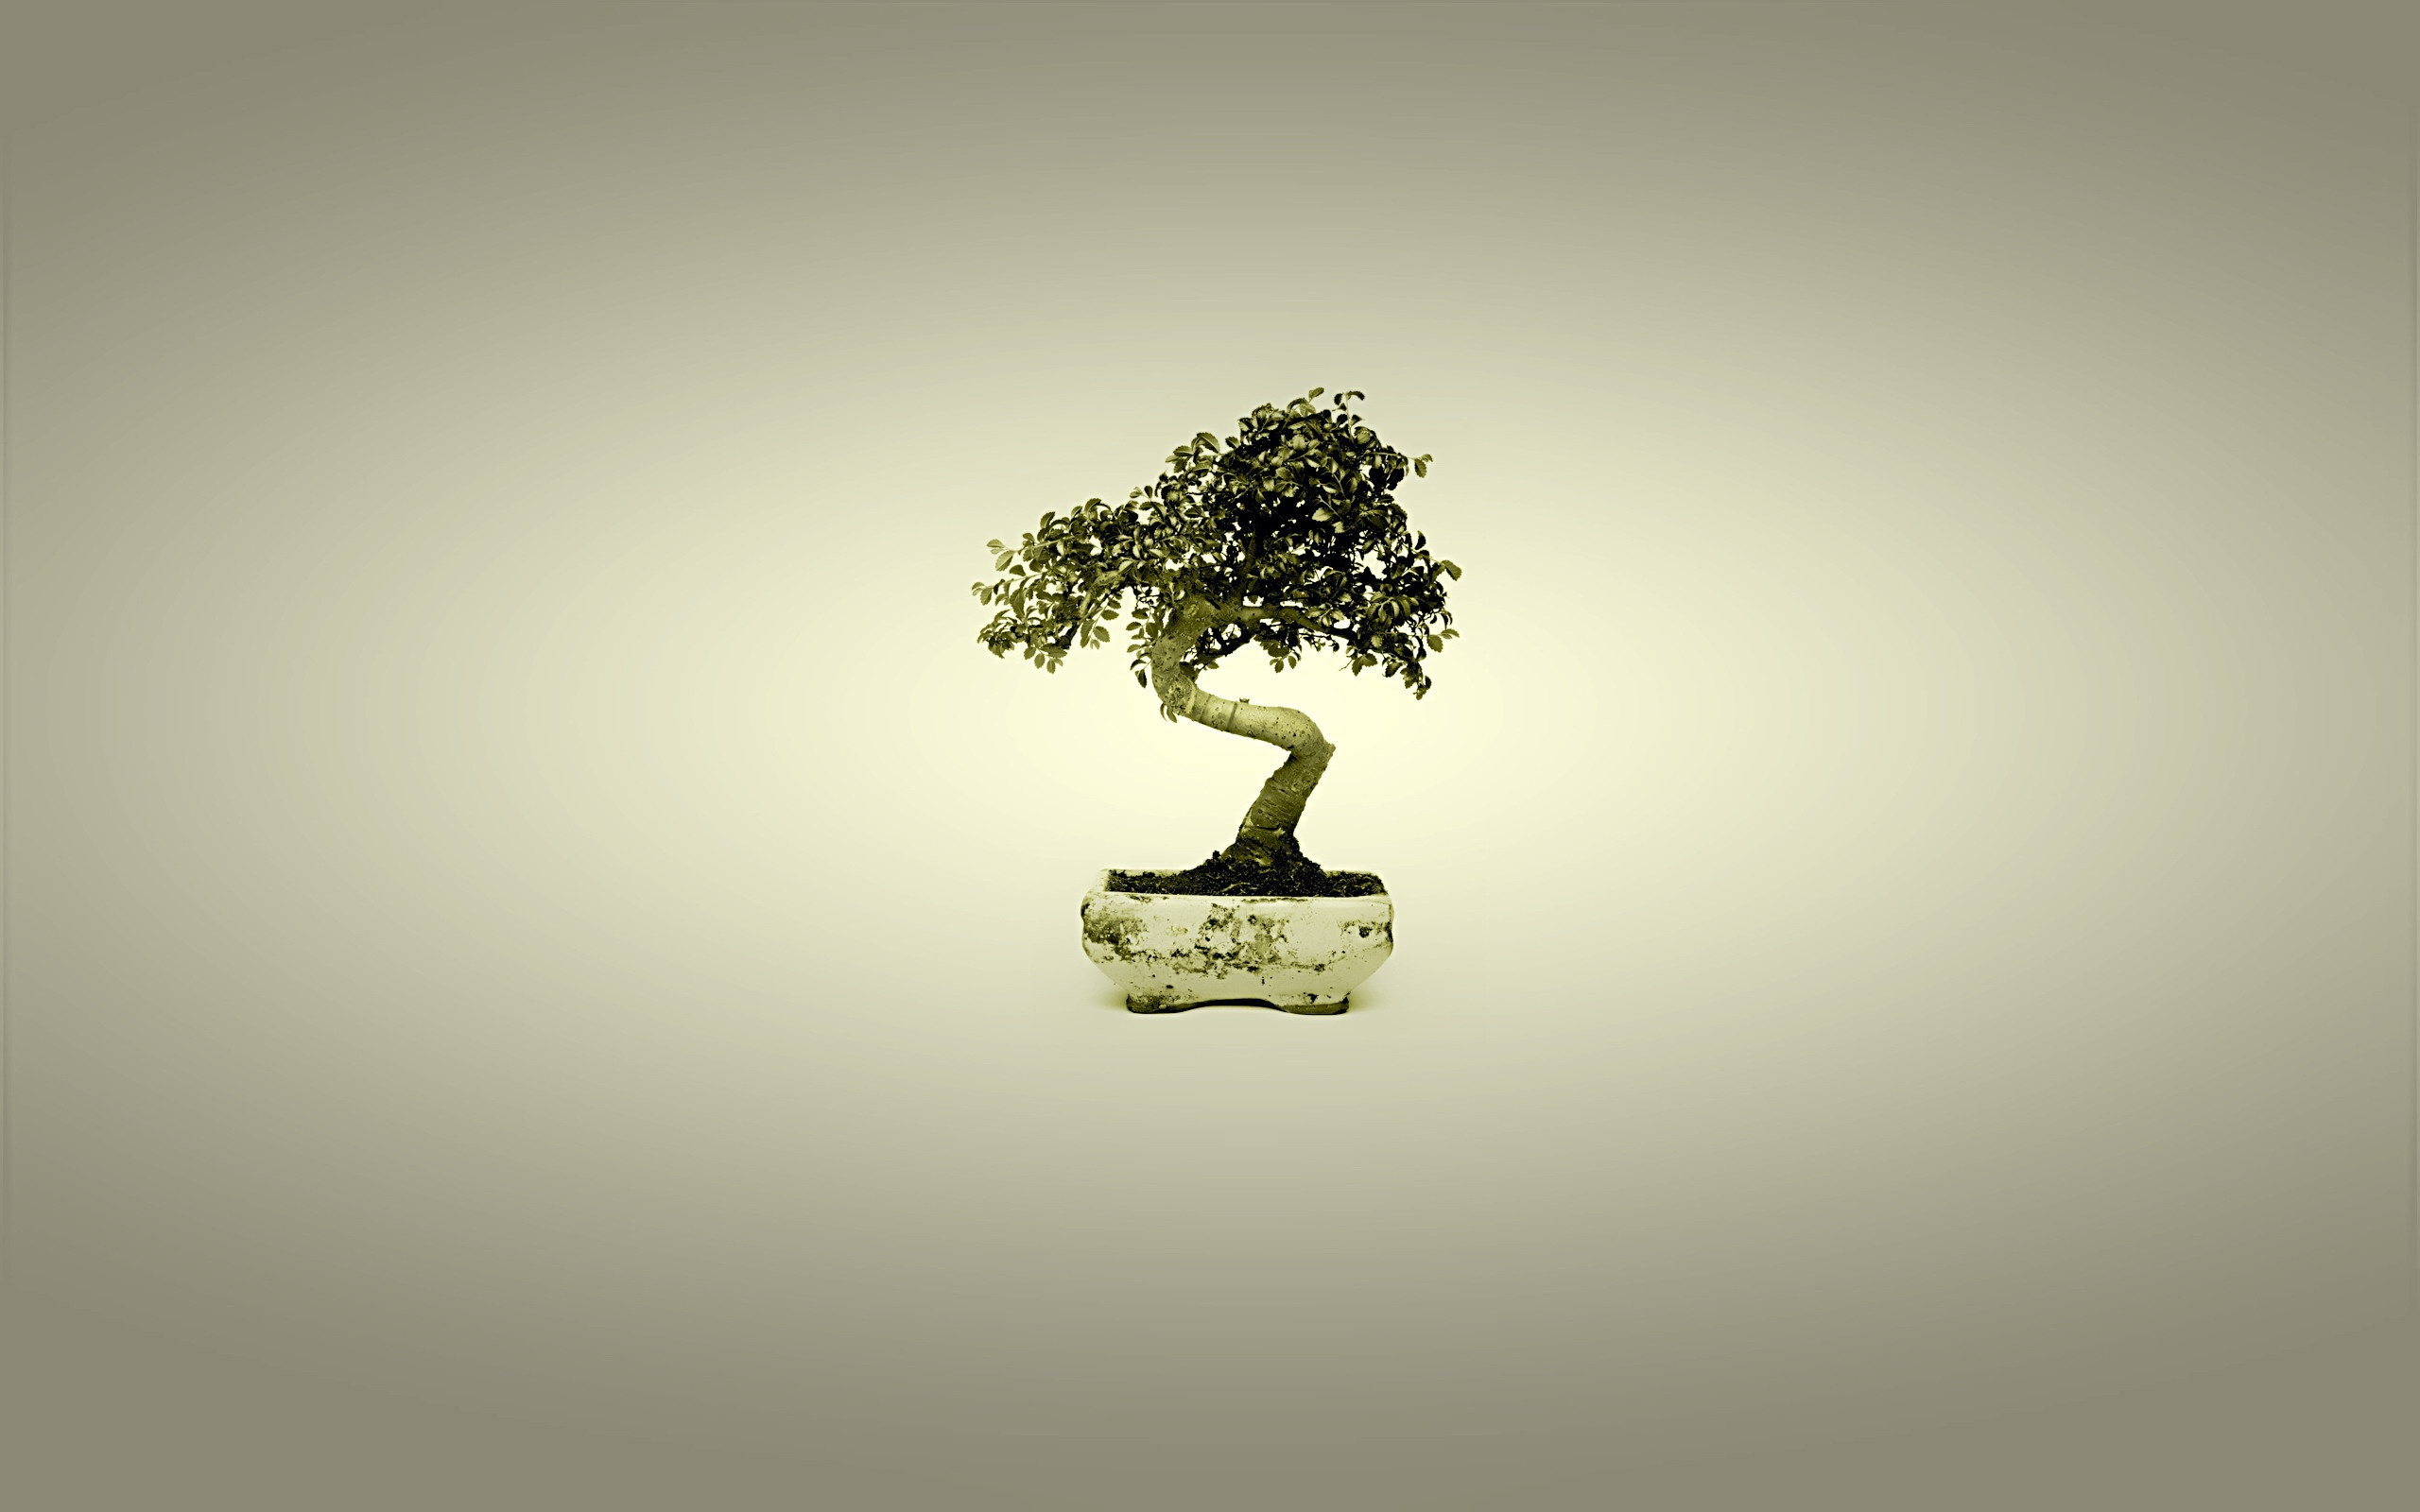 Cây bonsai thật xinh đẹp và tinh tế trên nền hình nền máy tính của bạn. Nó sẽ gợi nhắc đến cảm giác trầm lắng và phong thái lịch sự vốn có trong tác phẩm nghệ thuật này. Hãy cùng xem ngay để trải nghiệm sự thanh tịnh và giải trí cùng những bức ảnh đẹp.